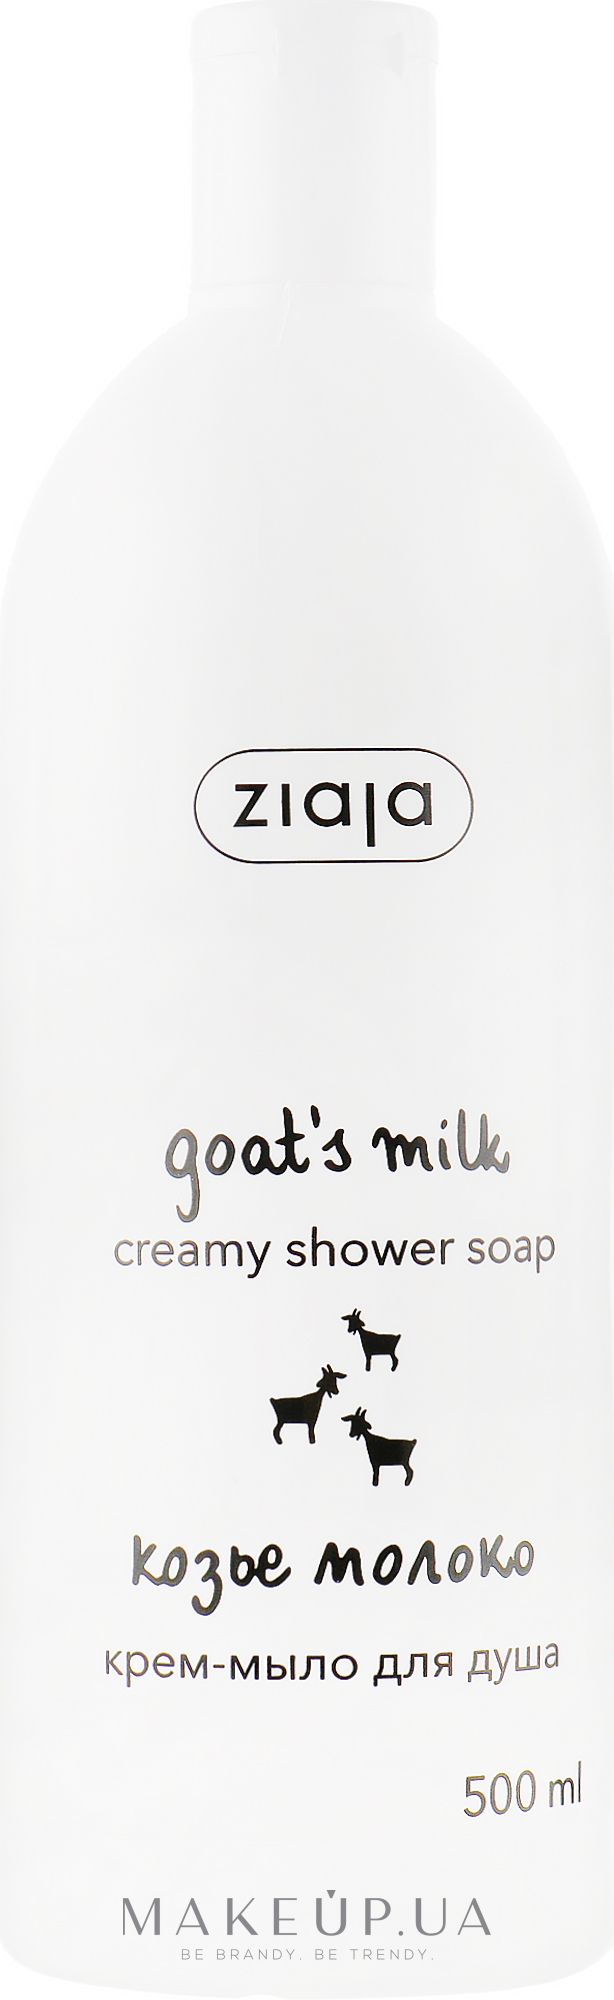 Крем-мыло для душа "Козье молоко" - Ziaja Creamy Shower Soap — фото 500ml